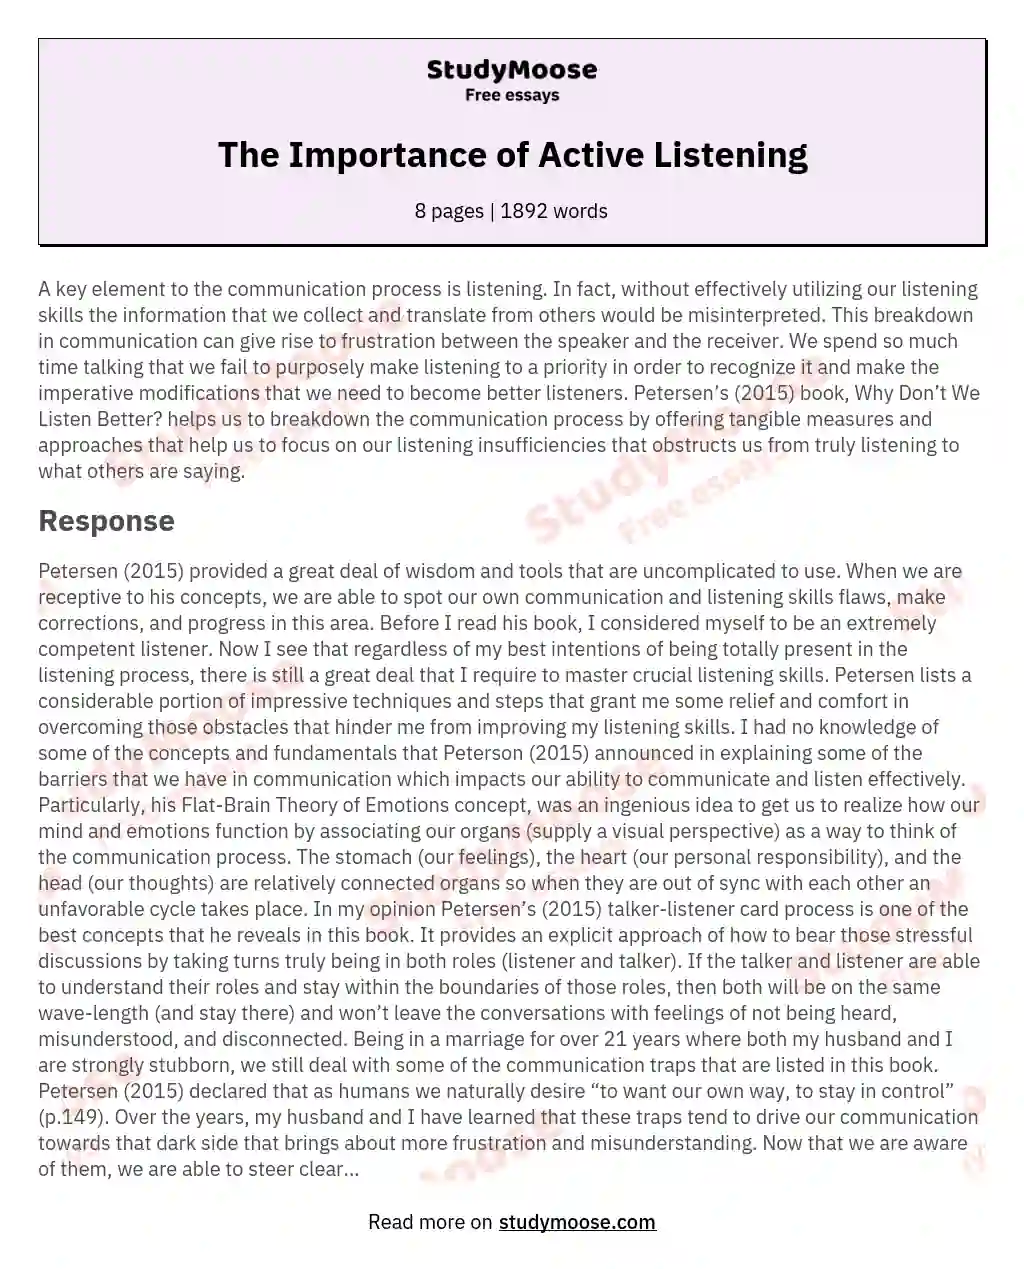 the art of listening essay